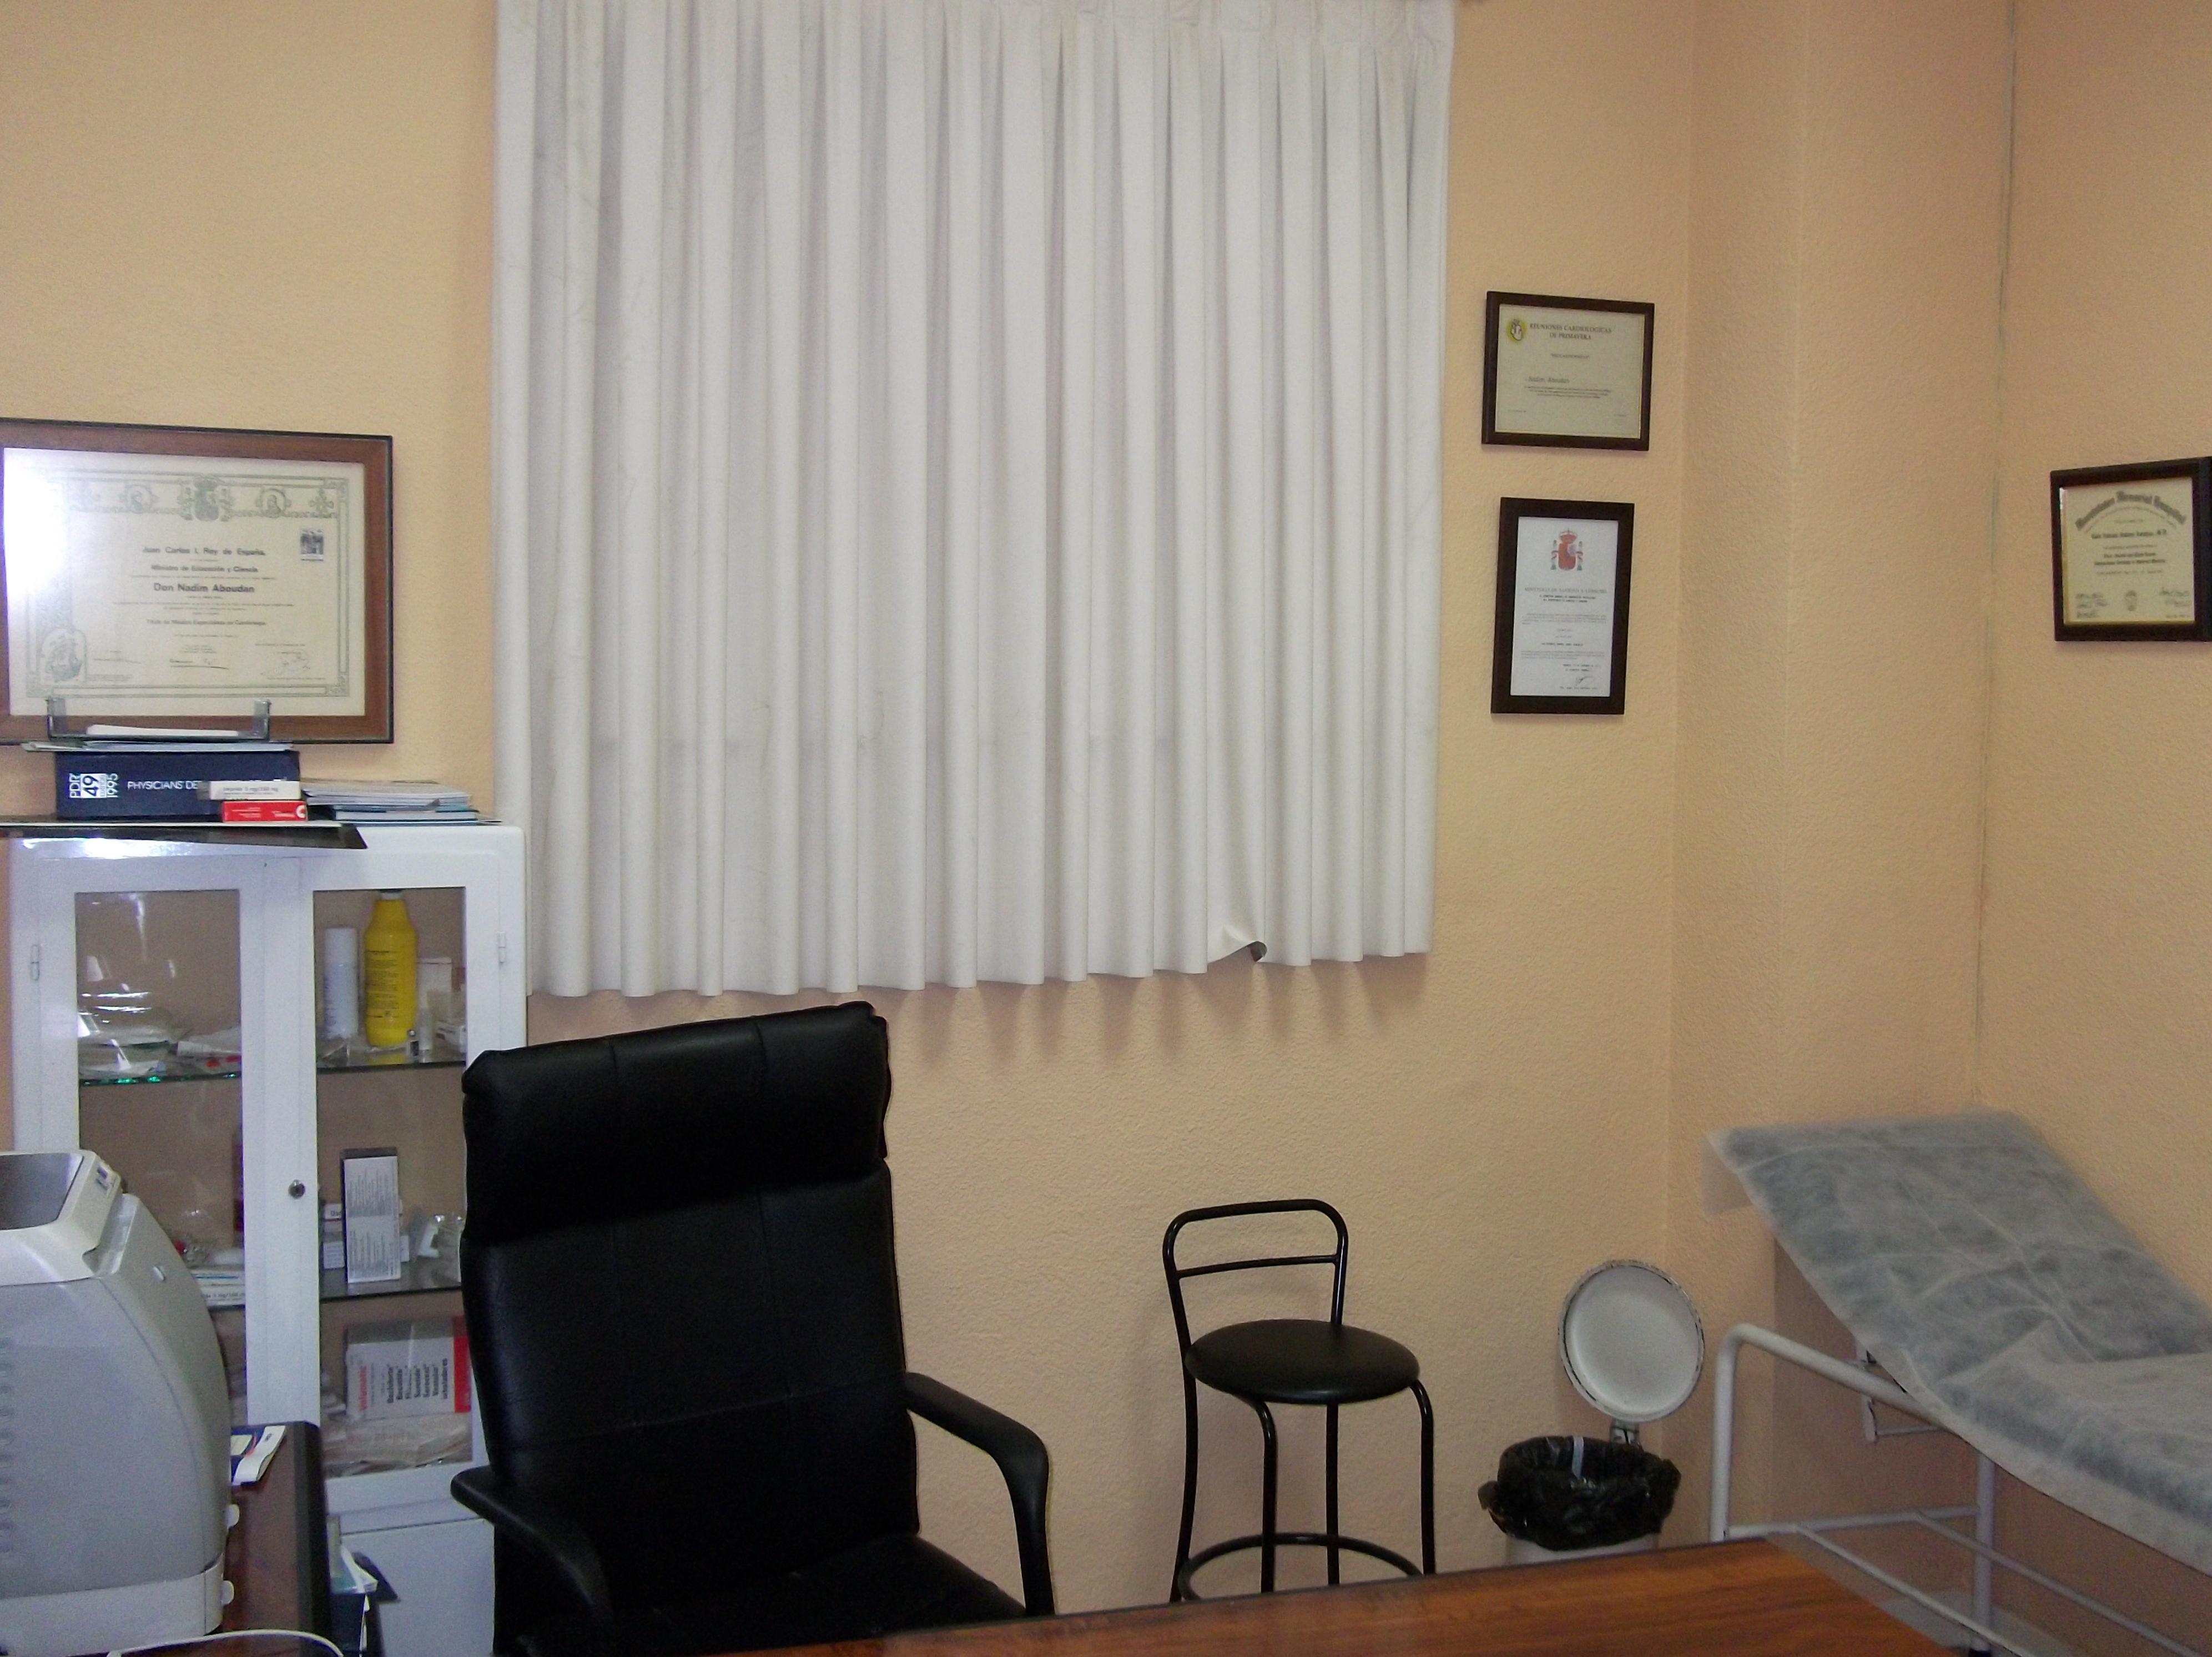 Foto 3 de Reconocimientos y certificados médicos en Úbeda | Centro Médico De Reconocimiento CMR